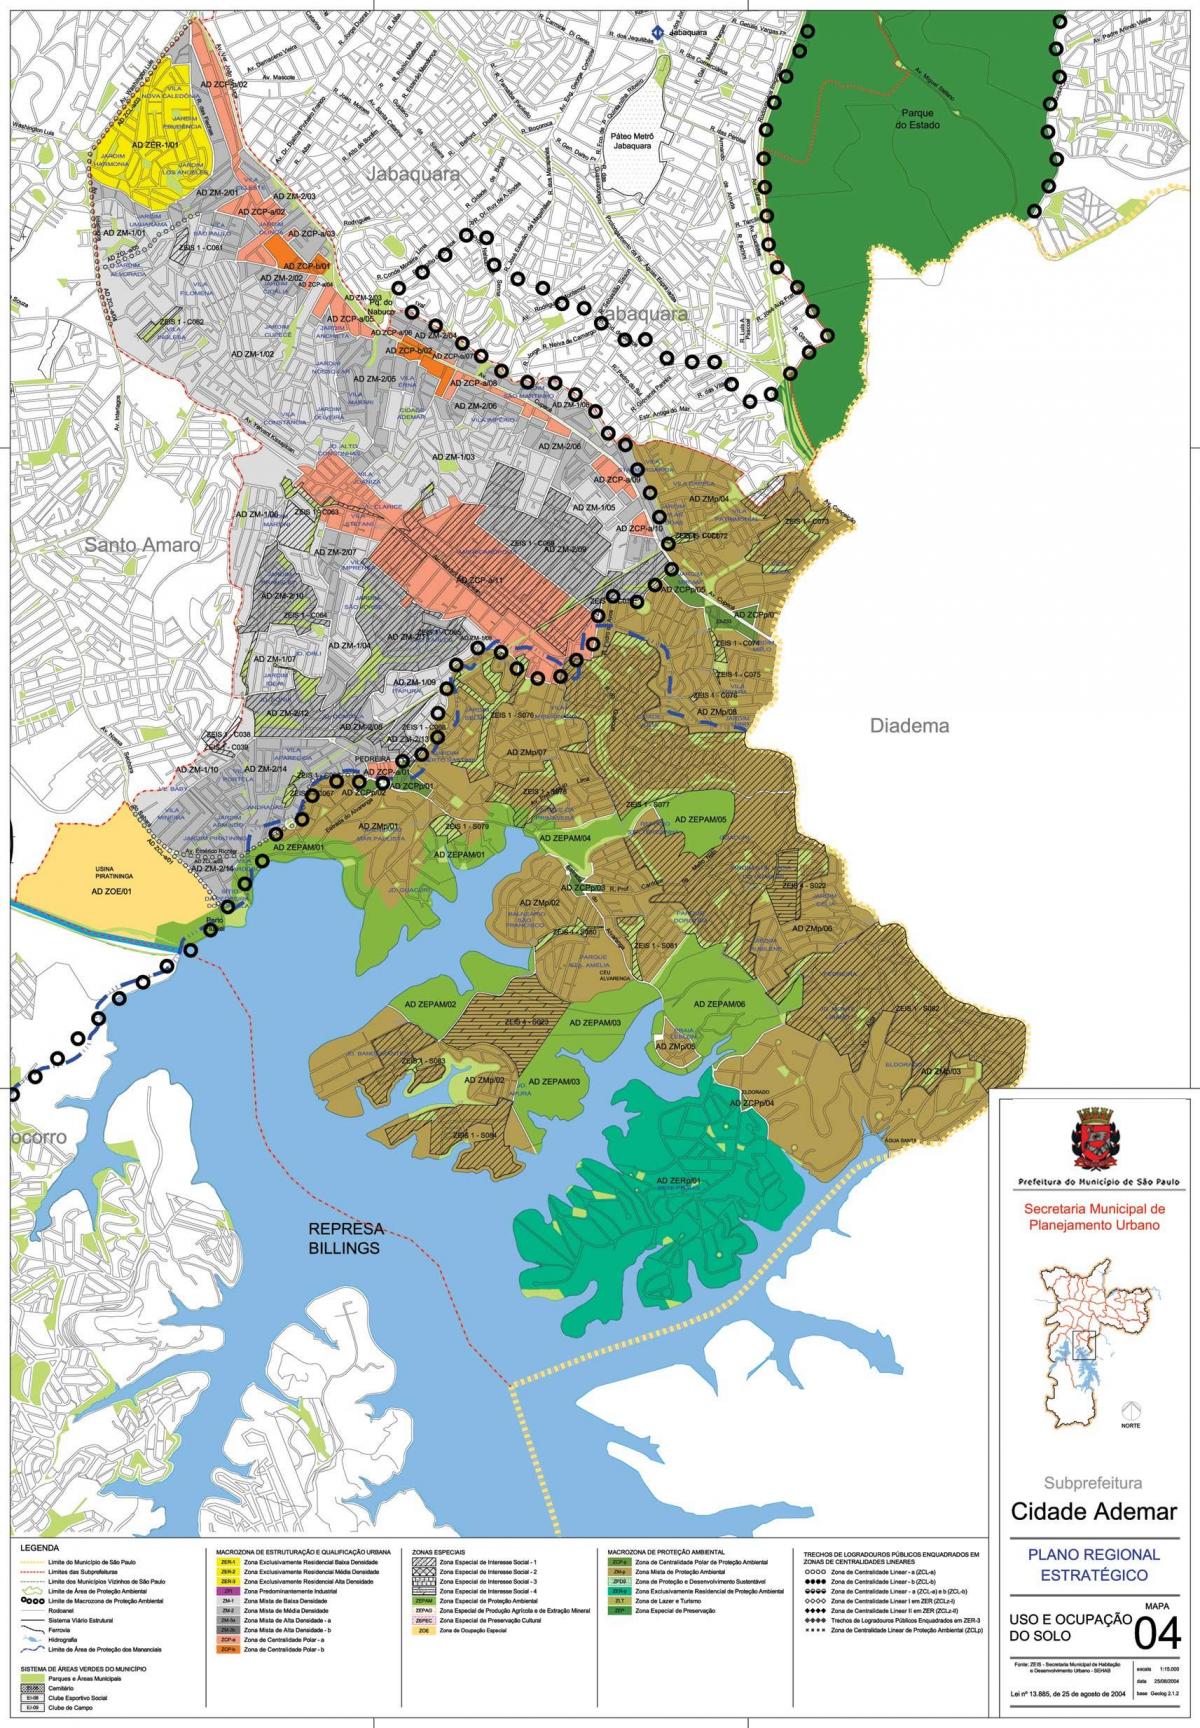 નકશો Cidade Ademar સાઓ પાઉલો - વ્યવસાય જમીન